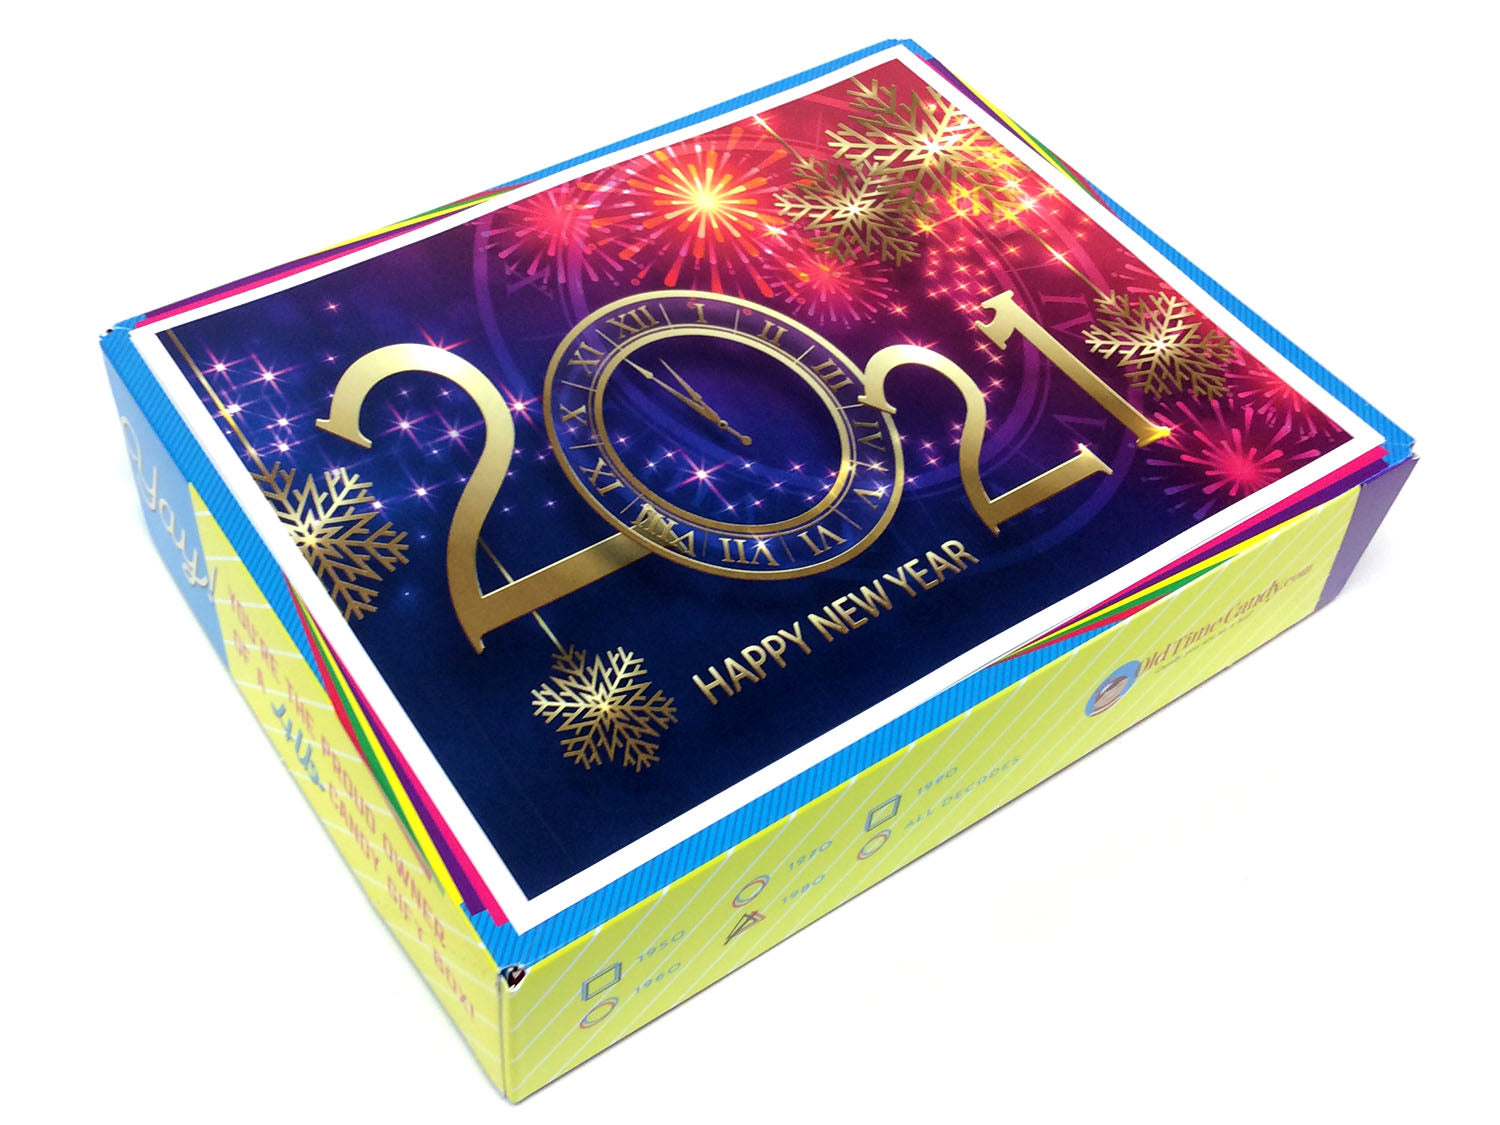 Happy Holidays Decade Gift Box - Happy New Year